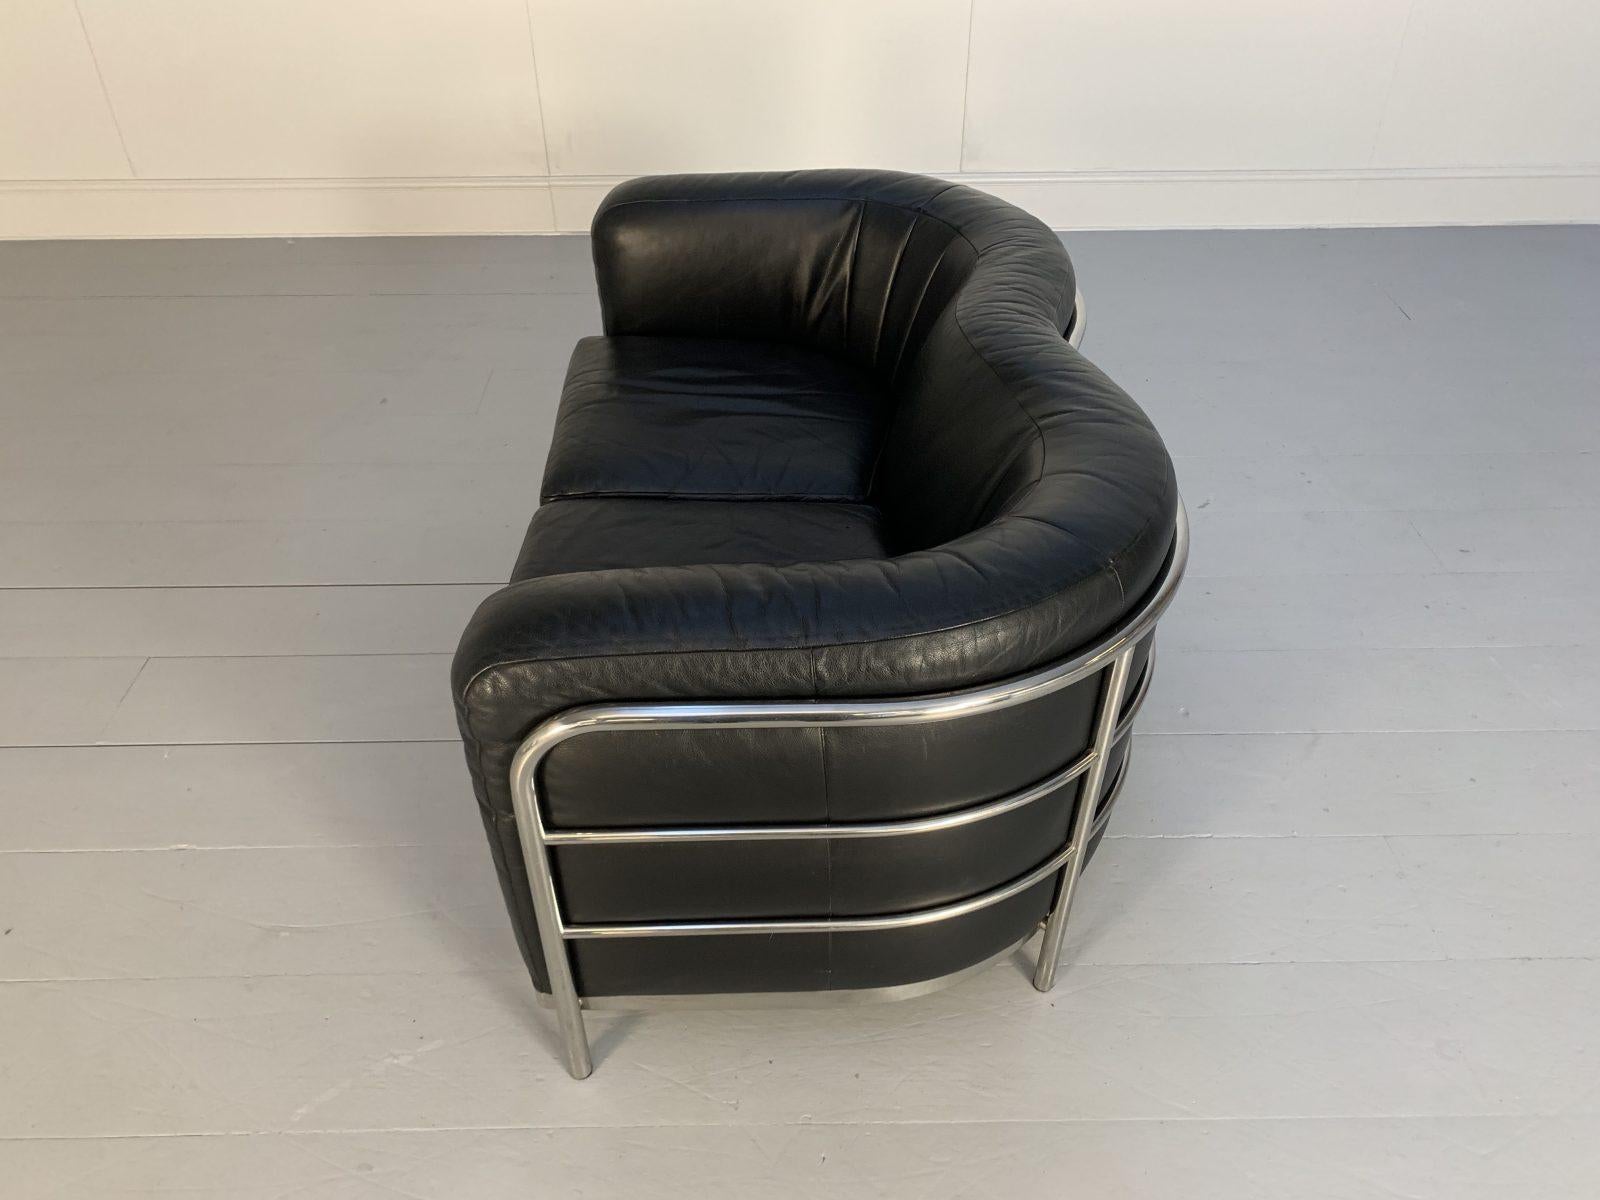 Zanotta “Onda” Sofa – 2-Seat – in Black “Scozia” Leather and Chrome For Sale 8